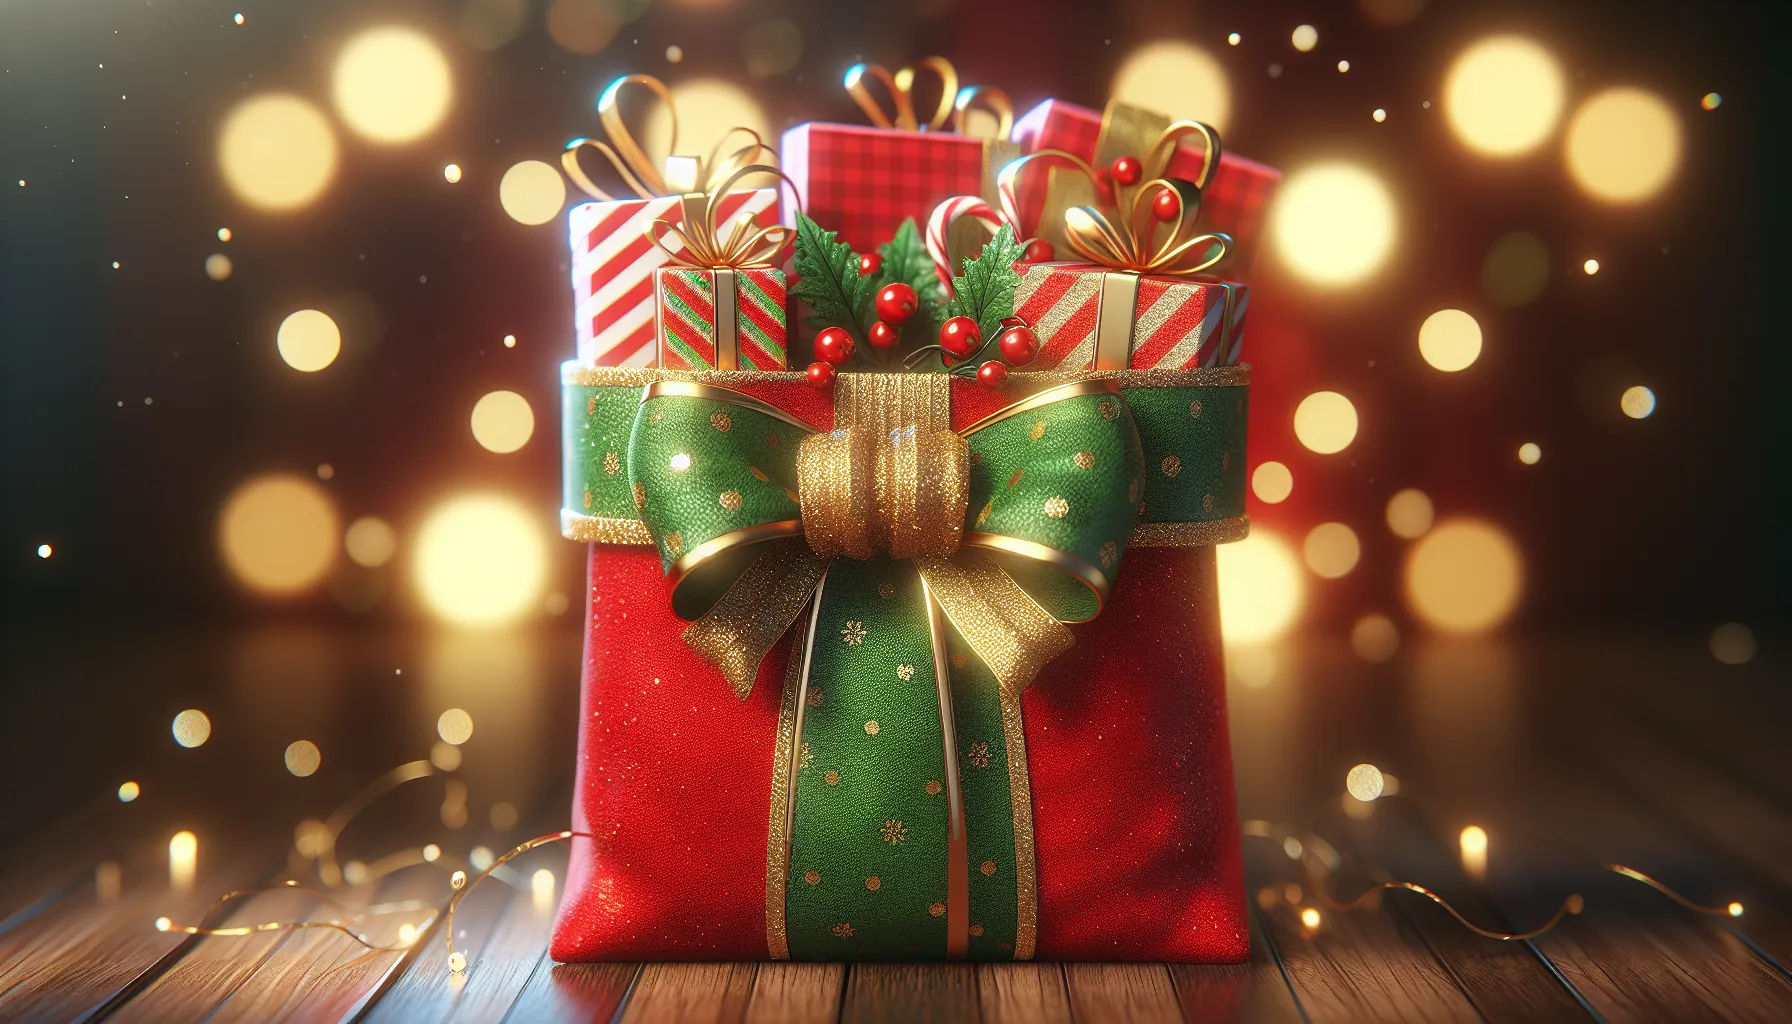 A sacolinha de Natal é um pequeno saco ou bolsa decorada que é usada para presentear pessoas durante a época de Natal. Ela é geralmente feita de tecido ou papel e é preenchida com presentes, doces ou outros itens festivos. A sacolinha de Natal é uma forma popular de compartilhar a alegria e o espírito natalino com amigos, familiares e colegas. É uma tradi